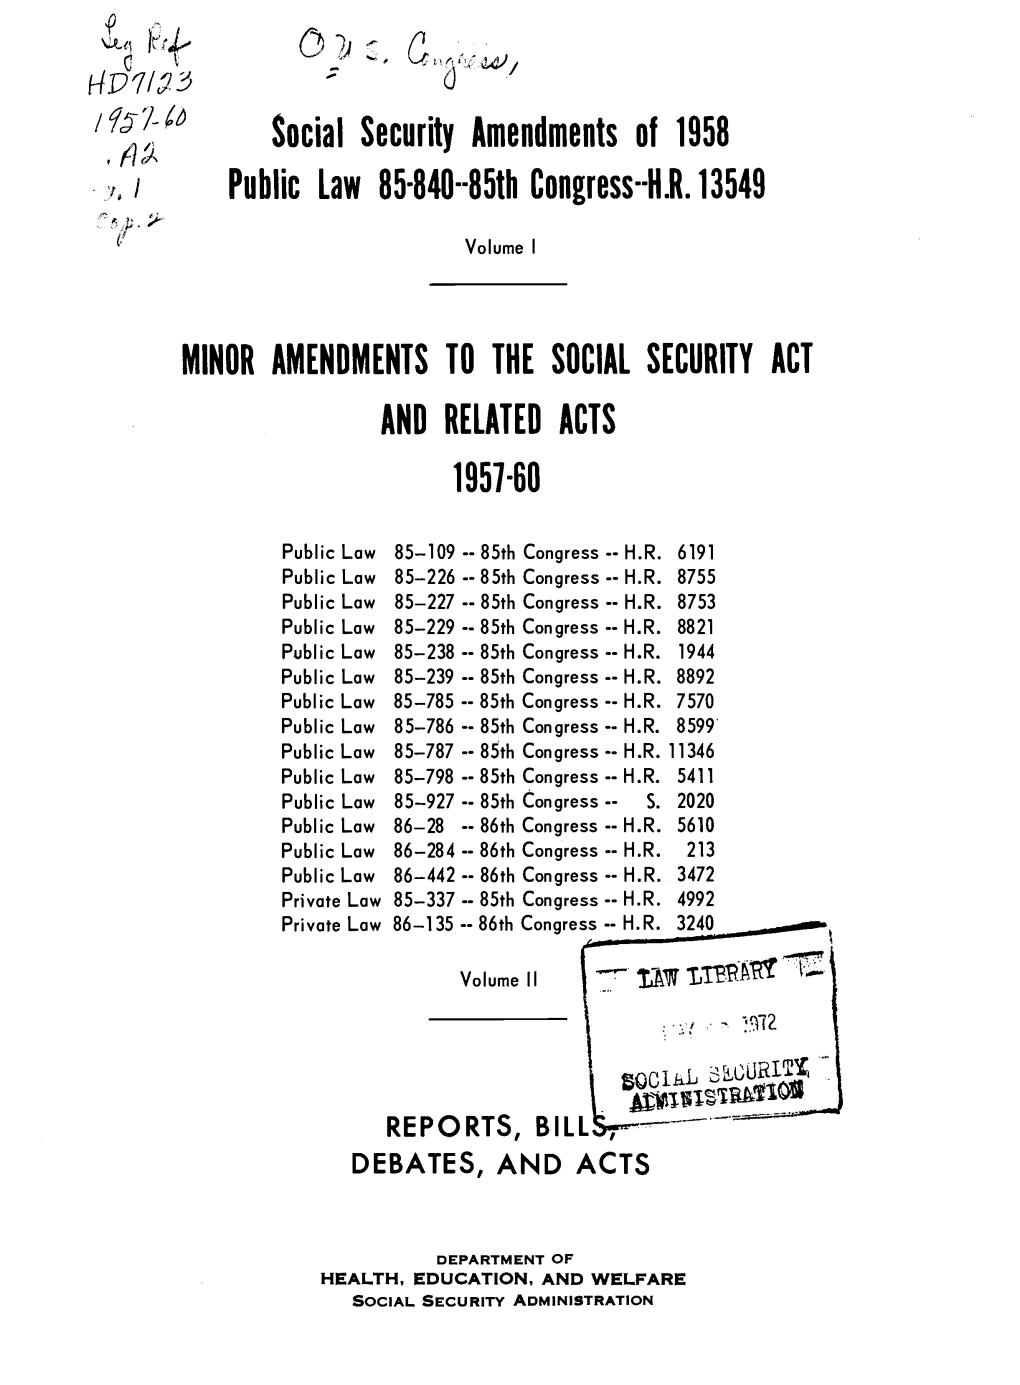 Social Security Amendments of 1957-60 Vol 1